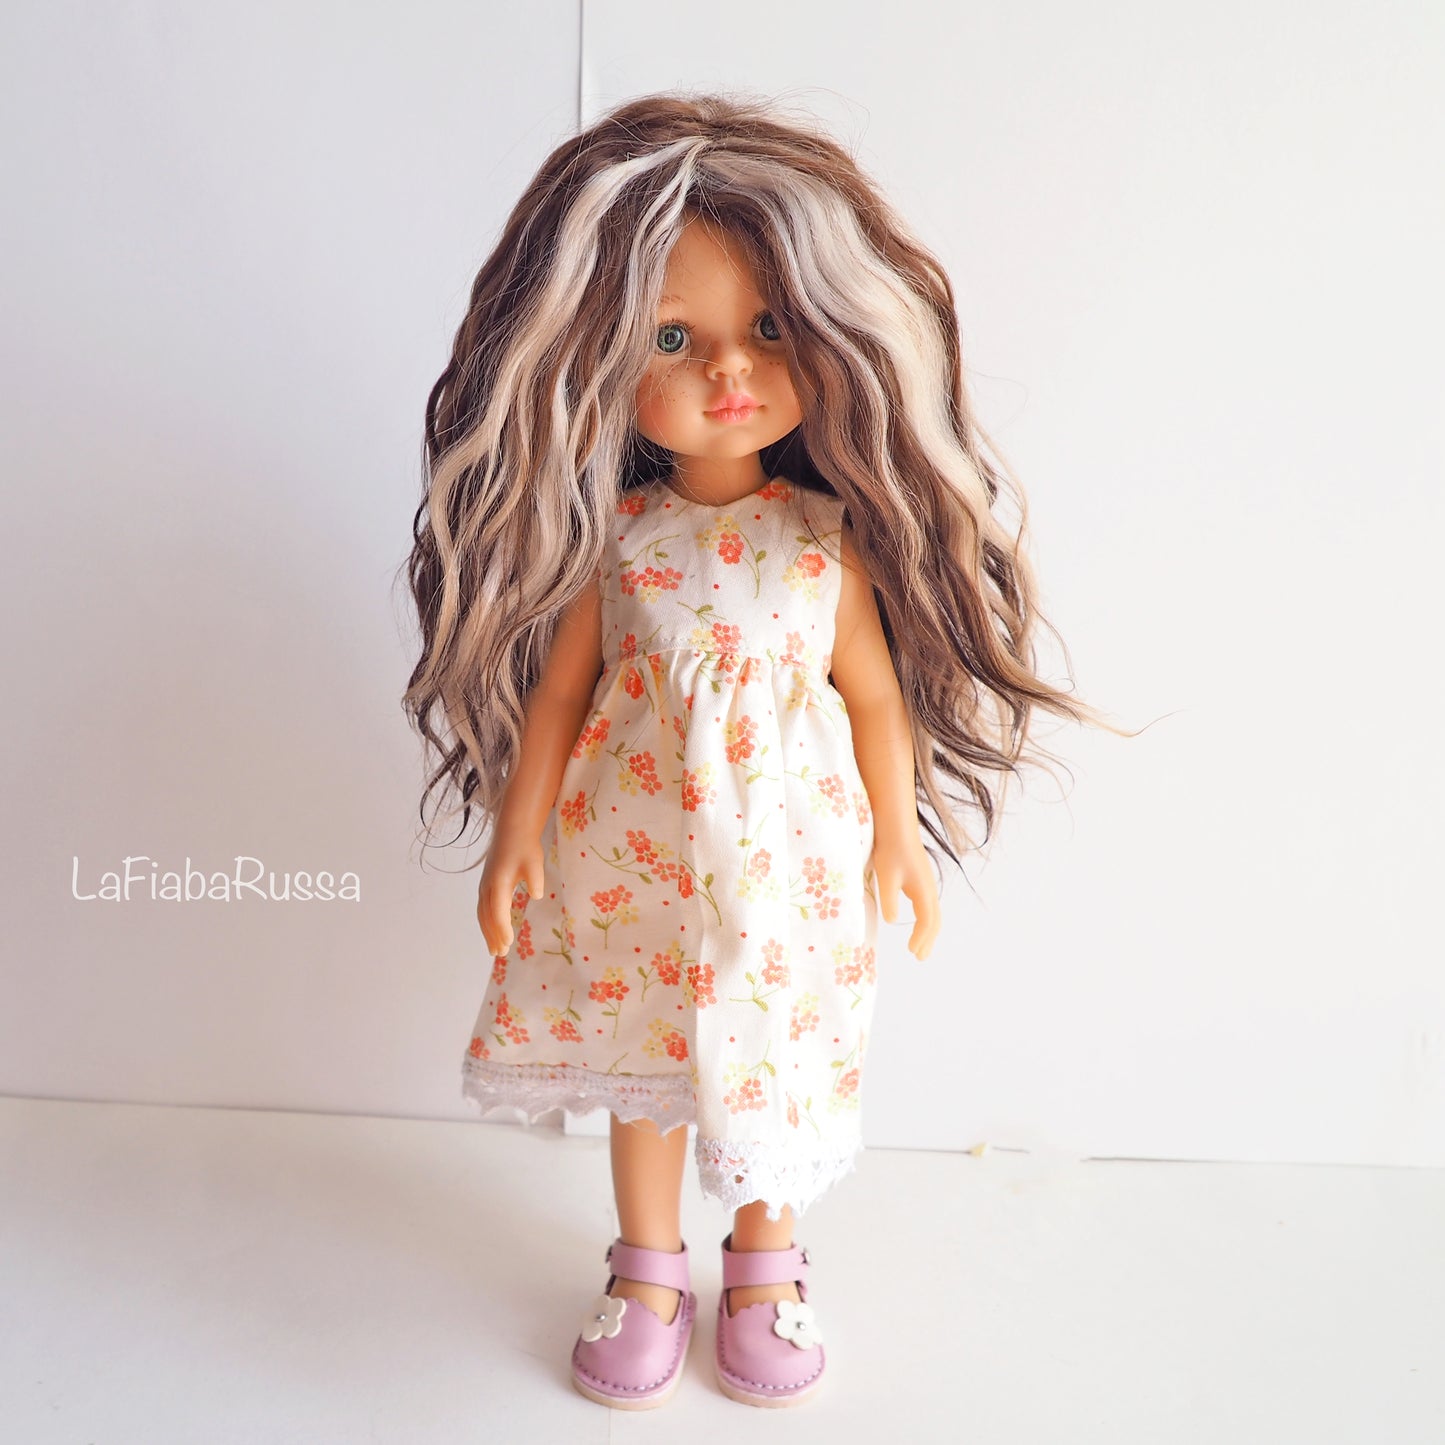 Parrucca da bambola Paola Reina in Angora Mohair multi colore biondo scuro e biondo.